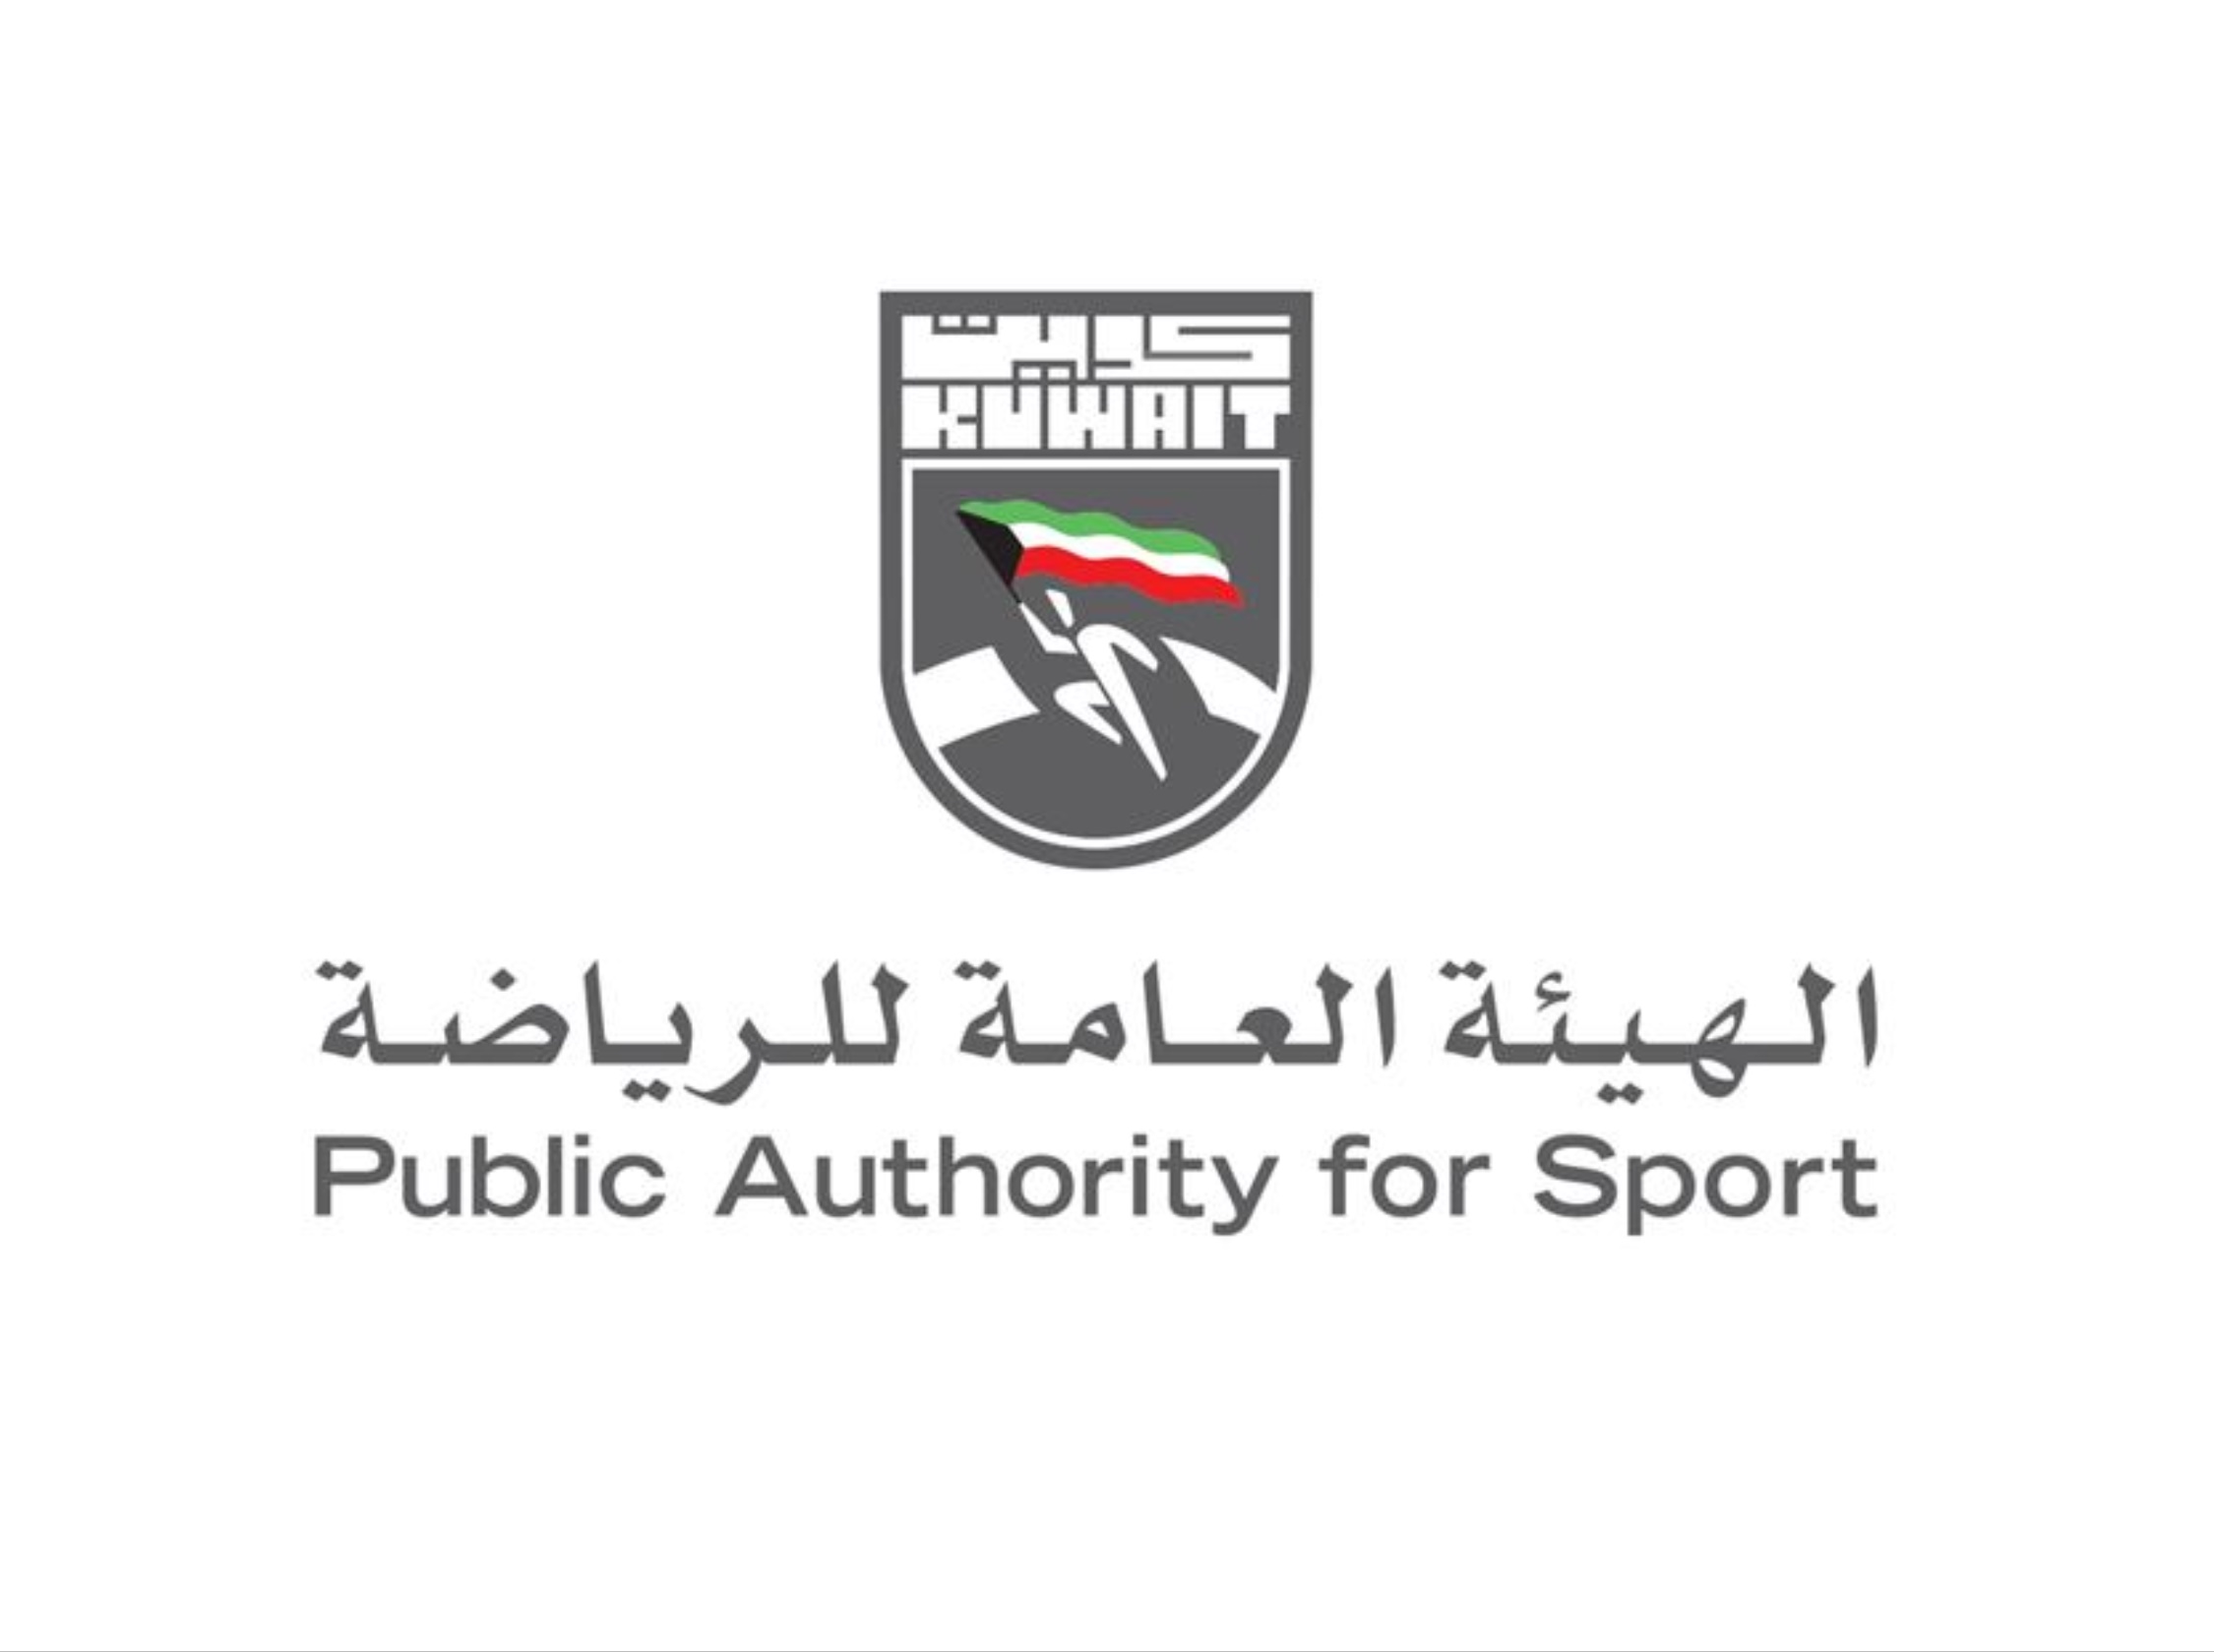 الهيئة العامة للرياضة تعلن تشكيل مجلس إدارة الهيئة الوطنية للتحكيم الرياضي التيار الاخضر